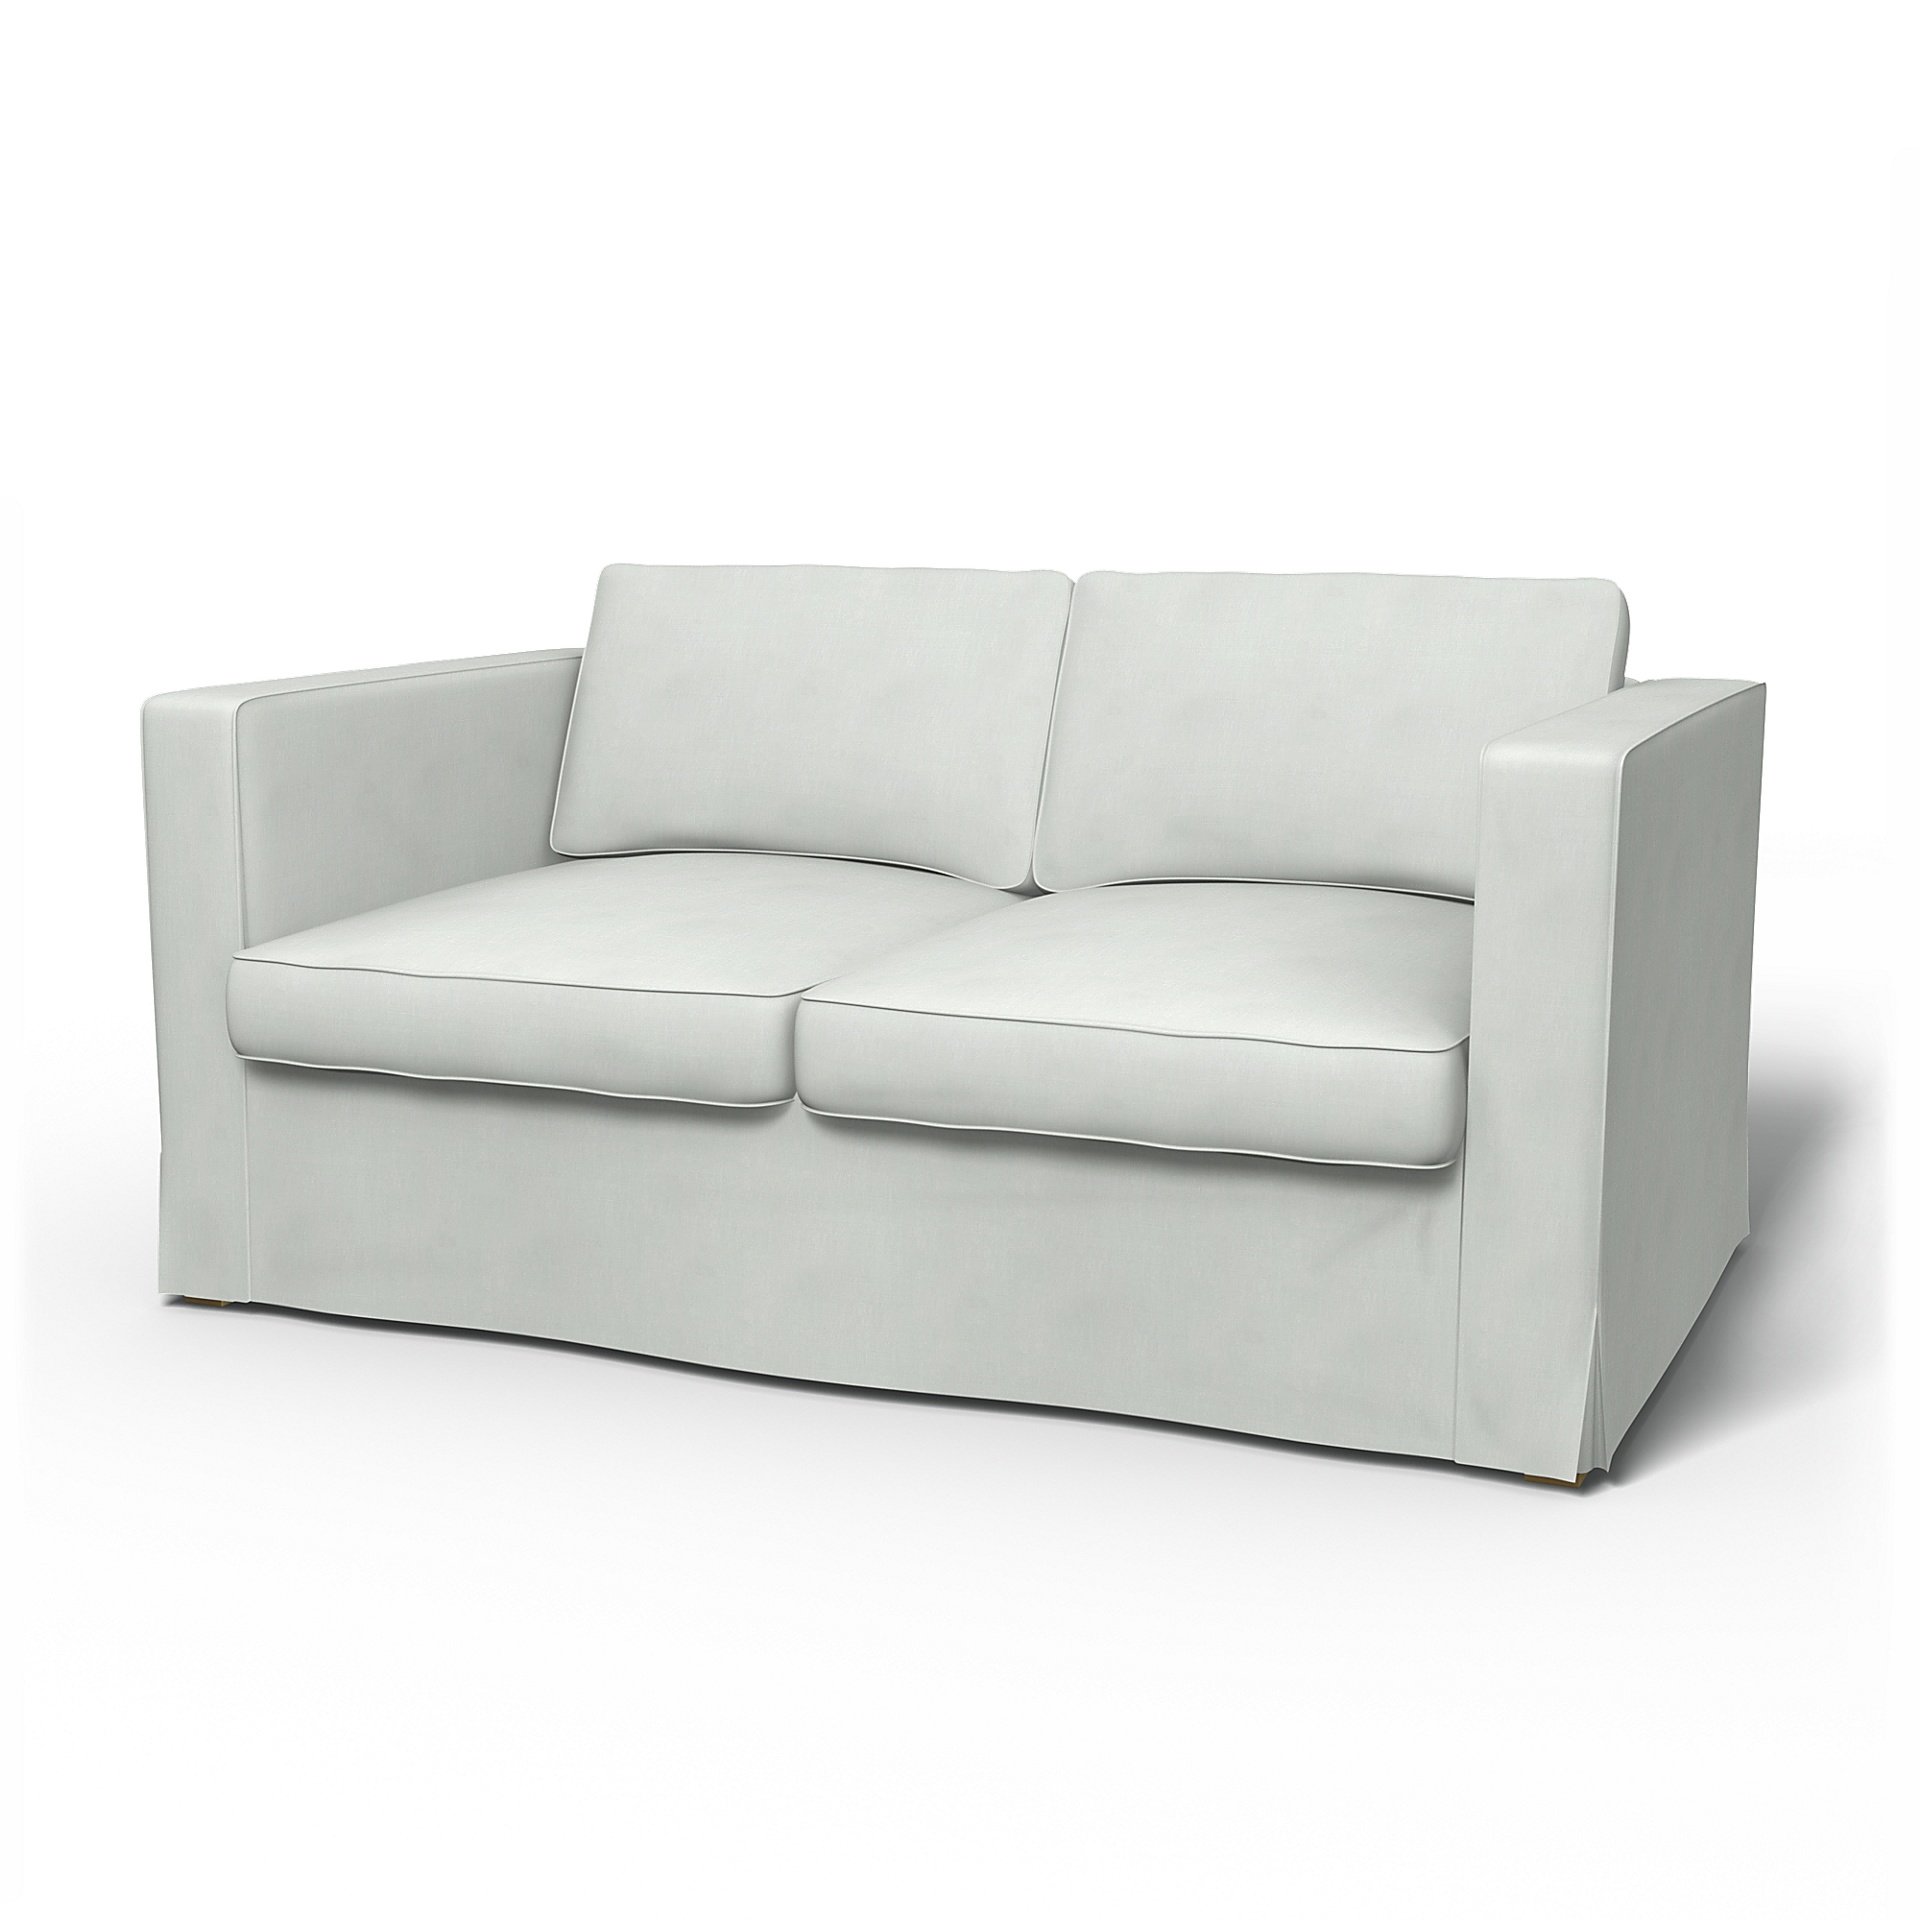 IKEA - Karlanda 2 Seater Sofa Cover, Silver Grey, Linen - Bemz